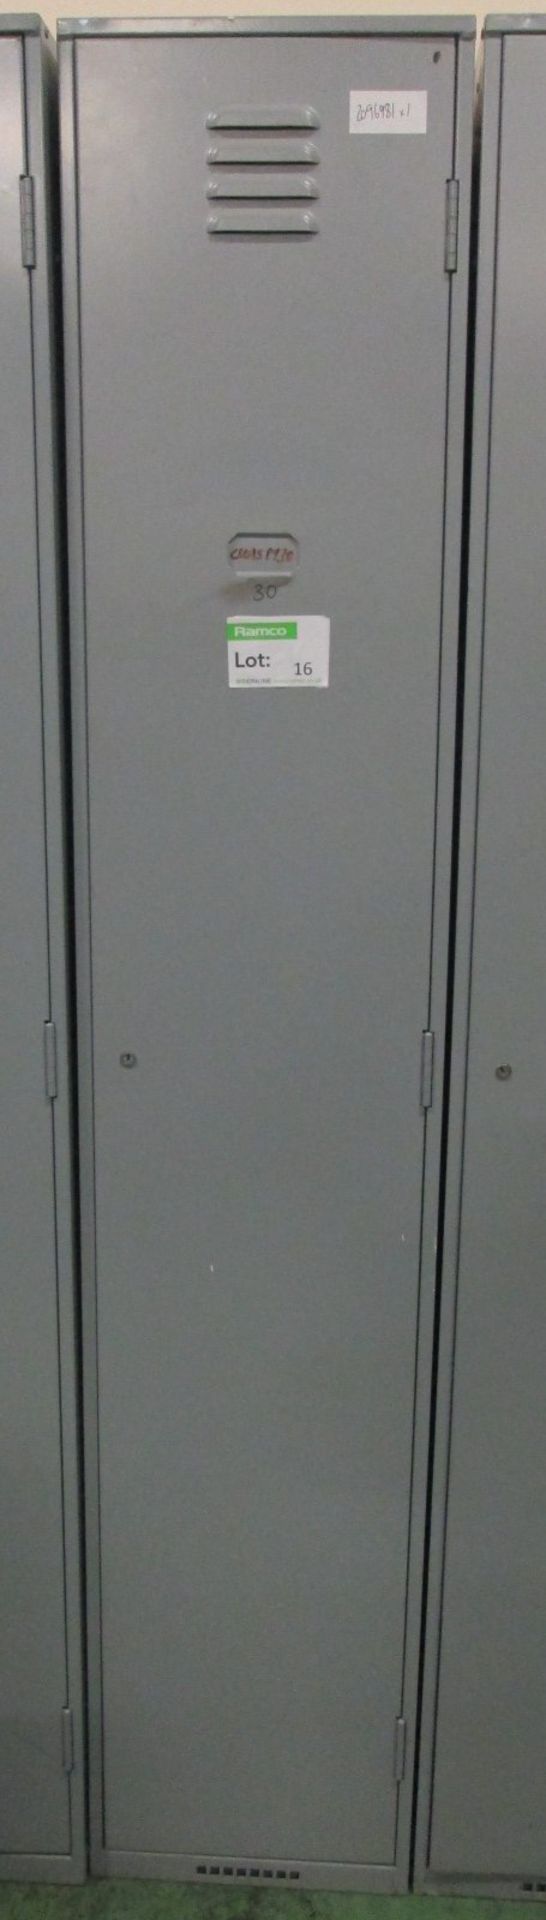 Single personnel locker